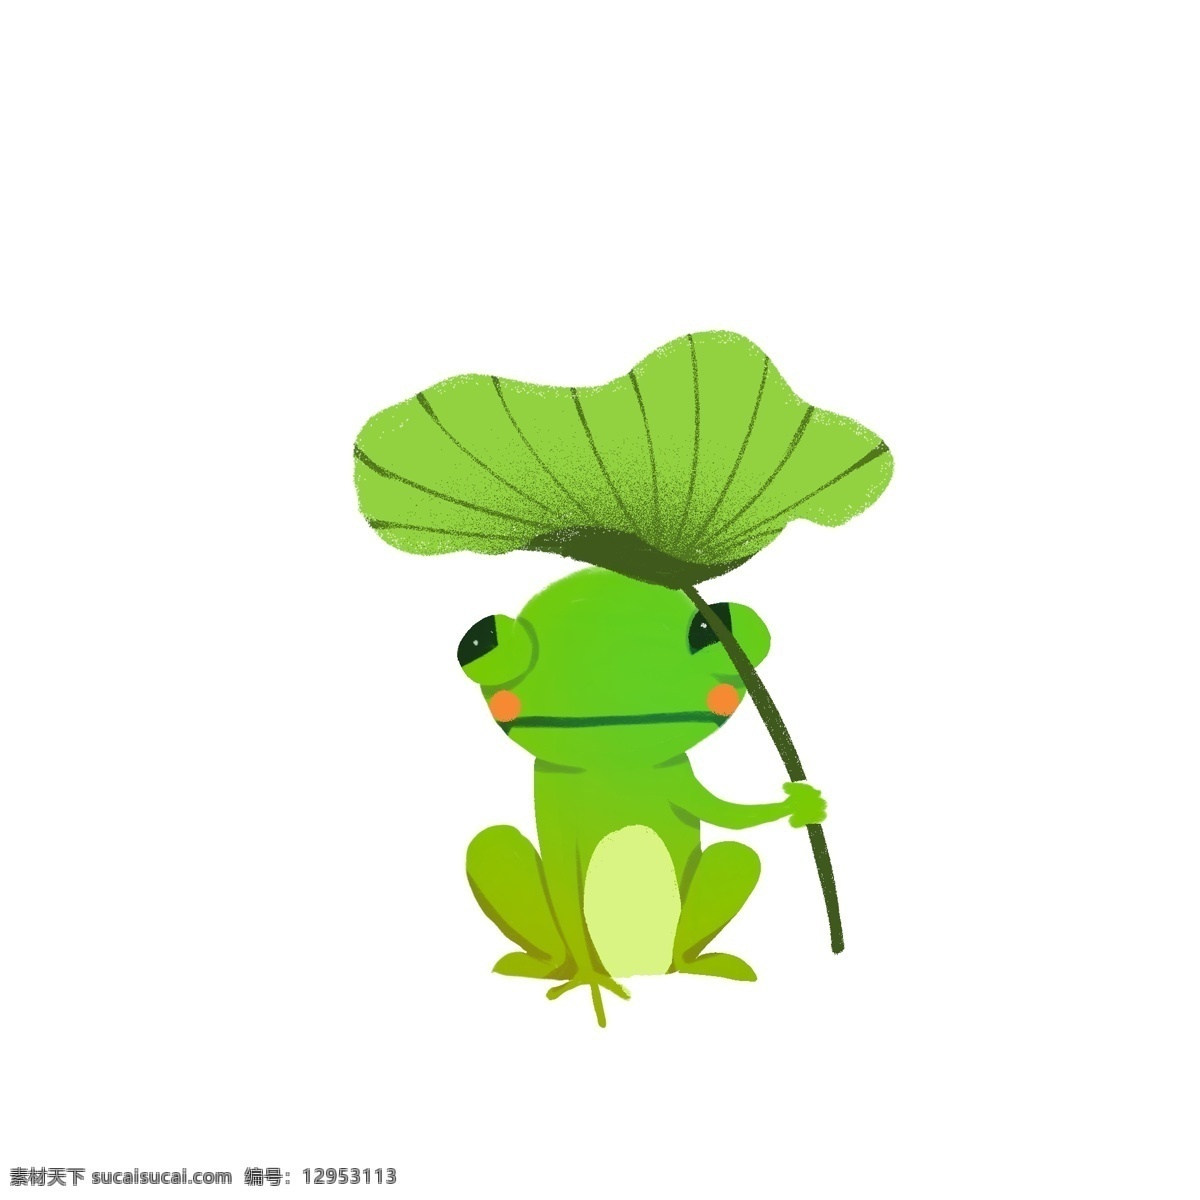 绿色 清新 撑 荷叶 伞 青蛙 卡通 插画 荷叶伞 动物